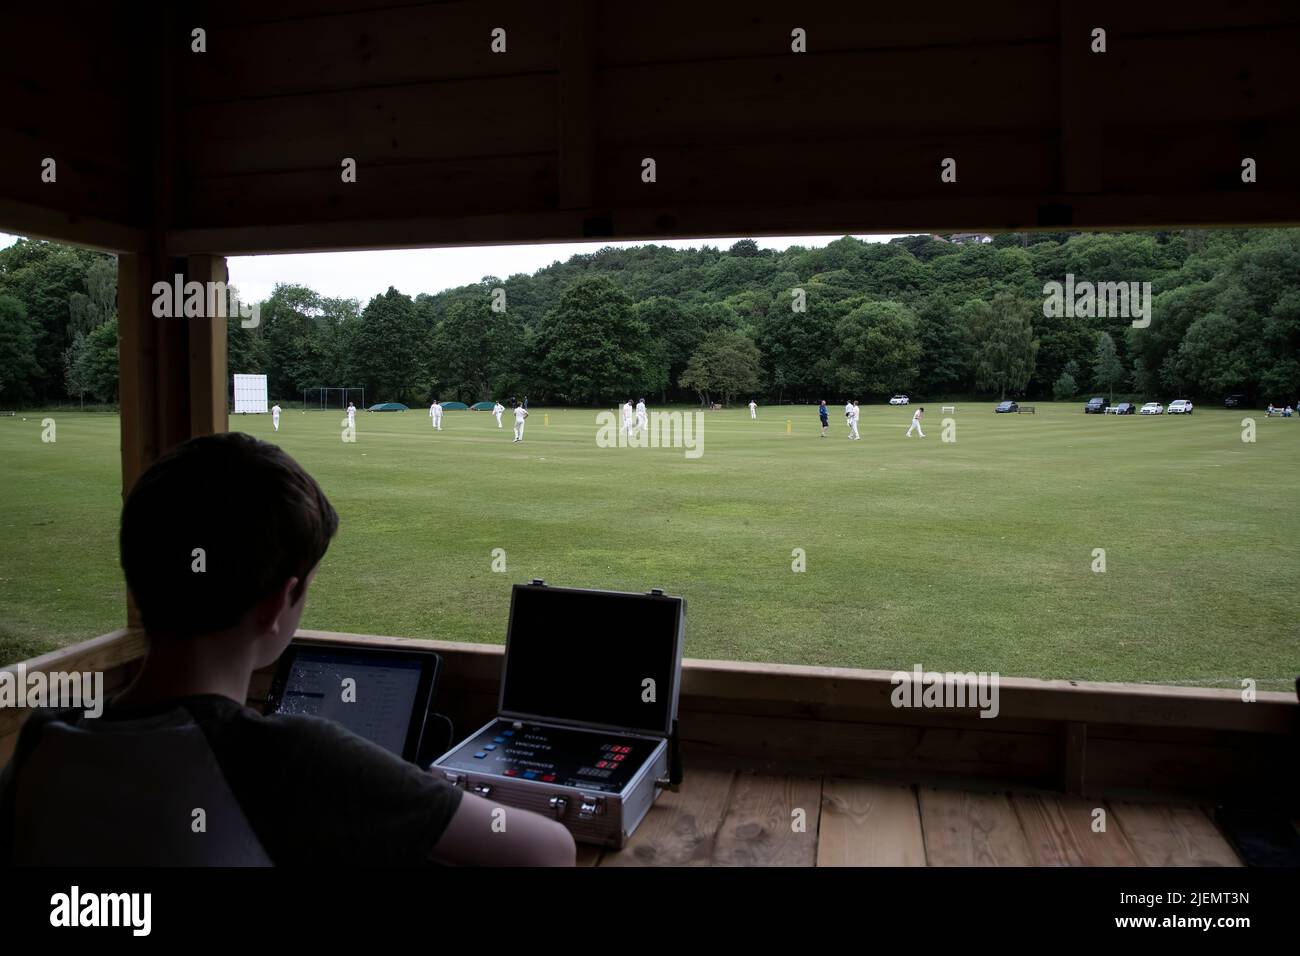 Vista dalla casella scorers come il marcatore registra elettronicamente il progresso e di una partita di cricket villaggio in una partita di campionato di cricket nello Yorkshire Foto Stock